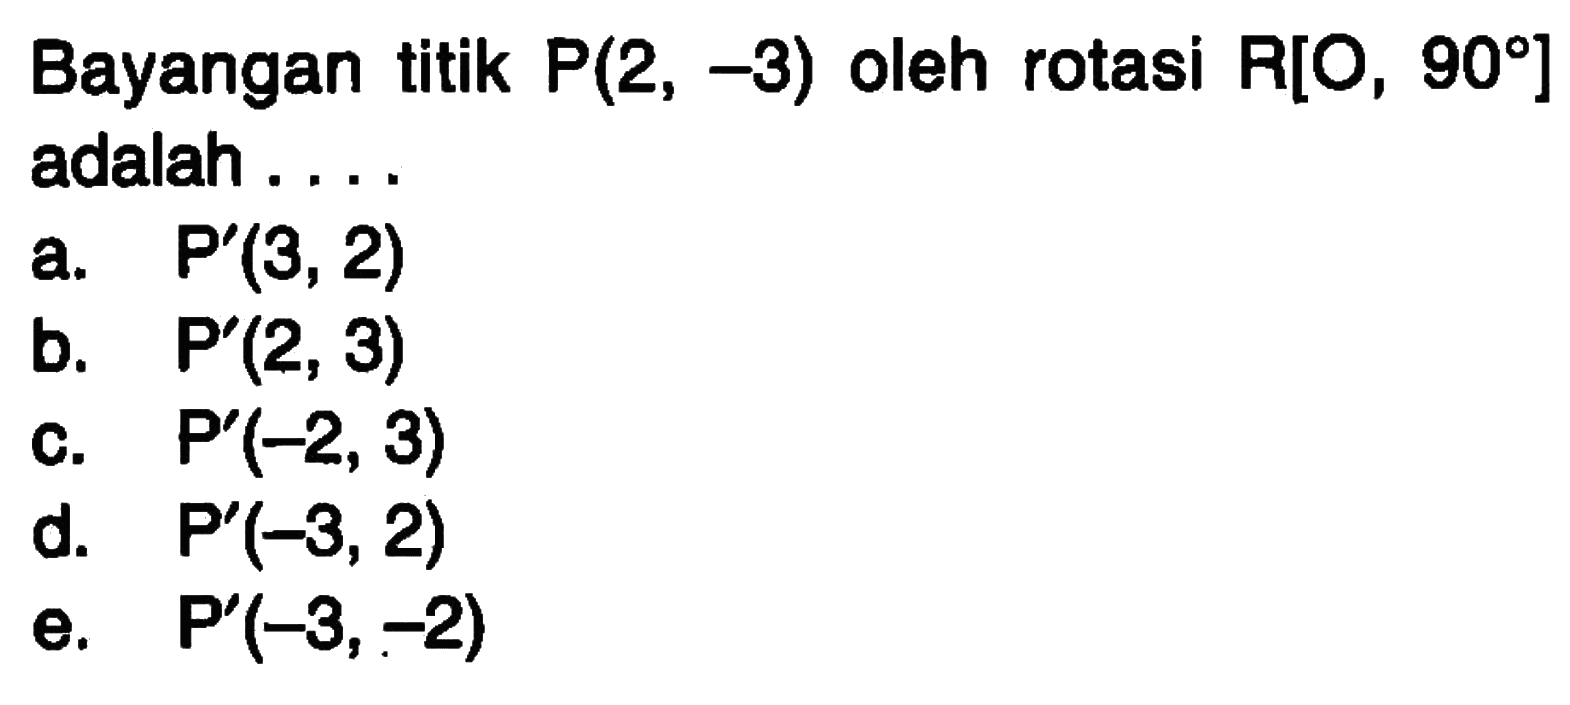 Bayangan titik P(2, -3) oleh rotasi R[O, 90 ] adalah . . . .